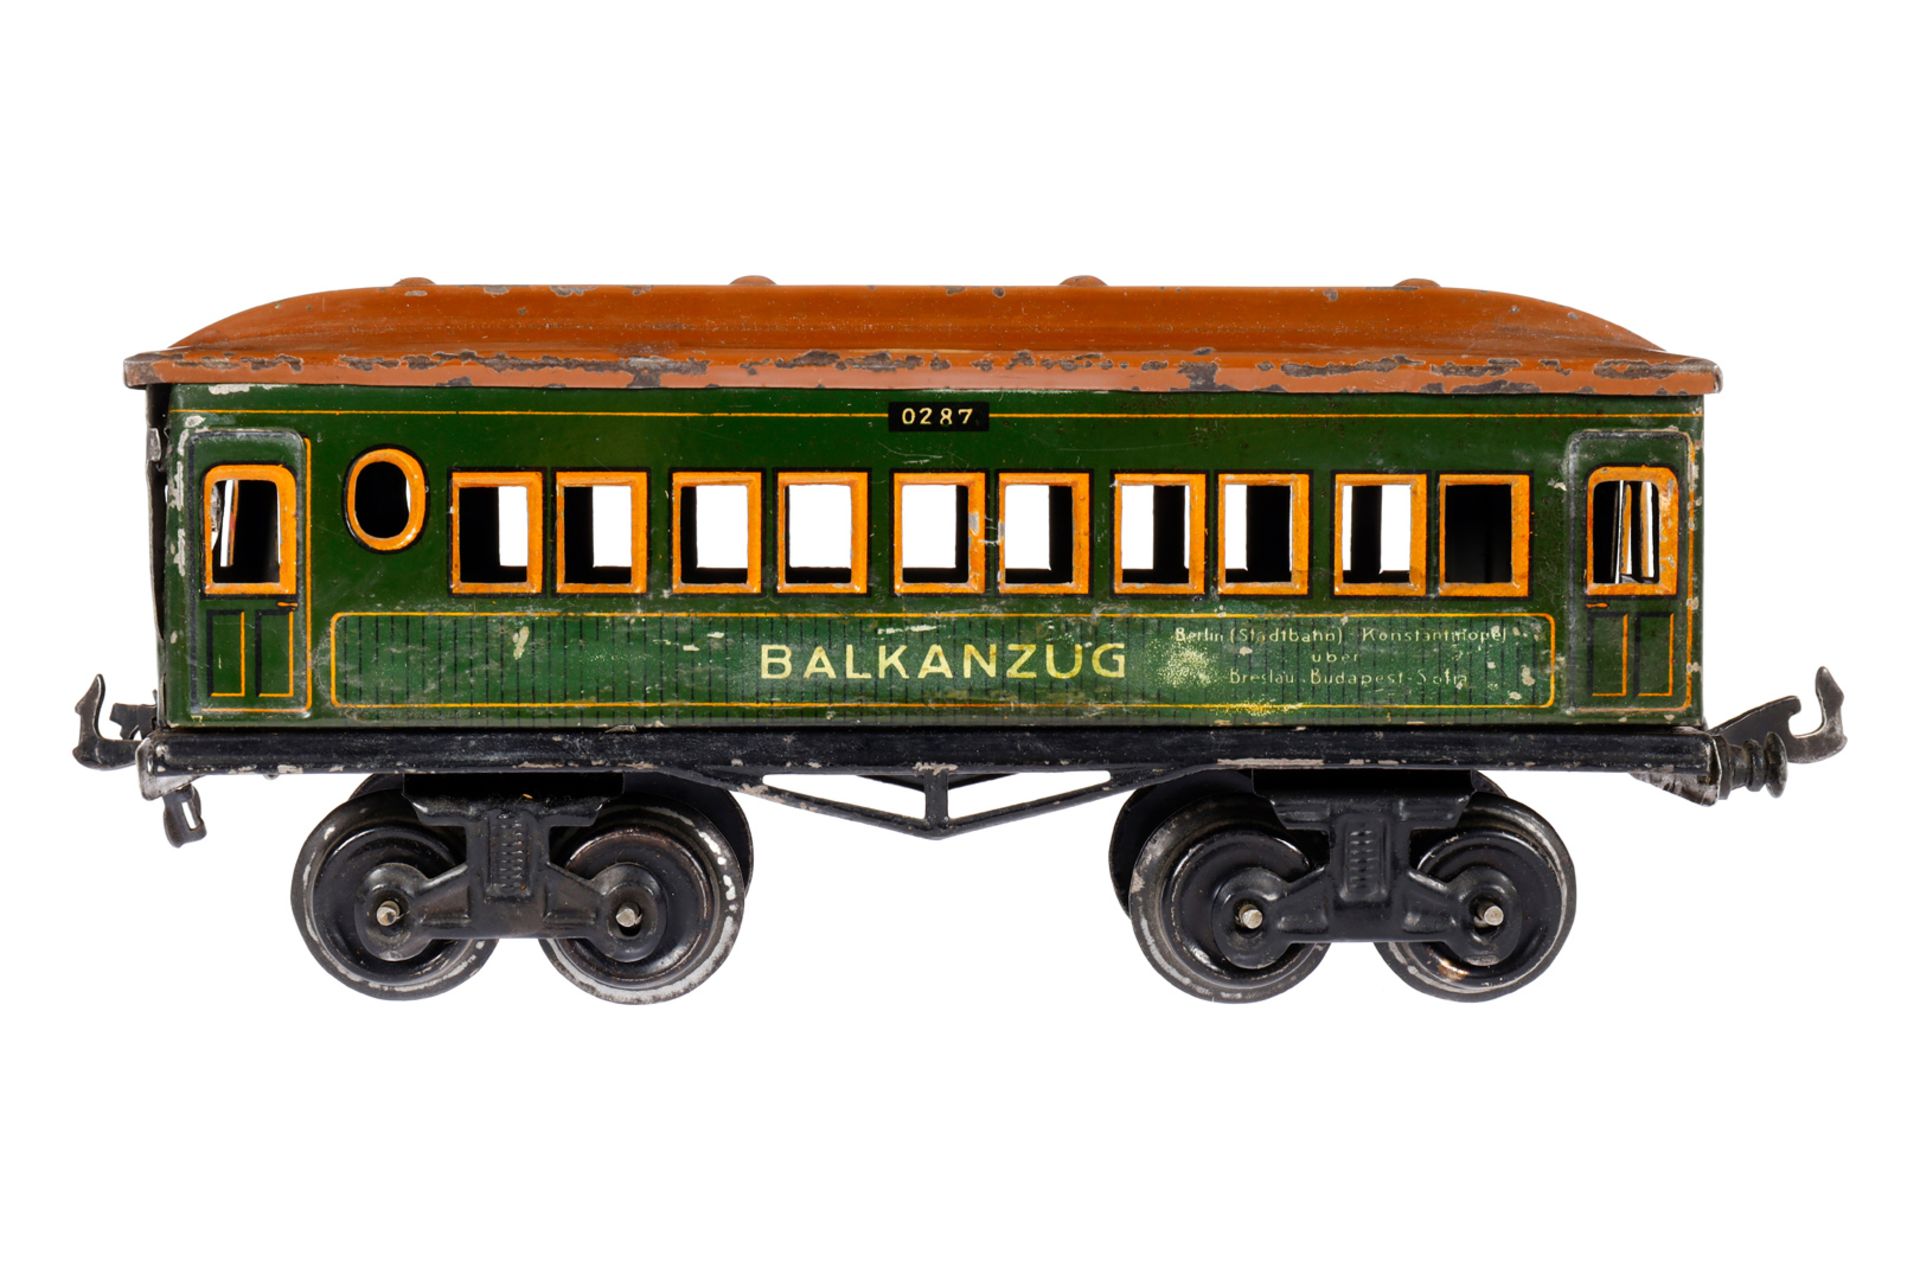 Bing Personenwagen ”Balkanzug”, Spur 0, uralt, CL, 1 Puffer fehlt, 1 Stirnseite mit Löchern, LS, L